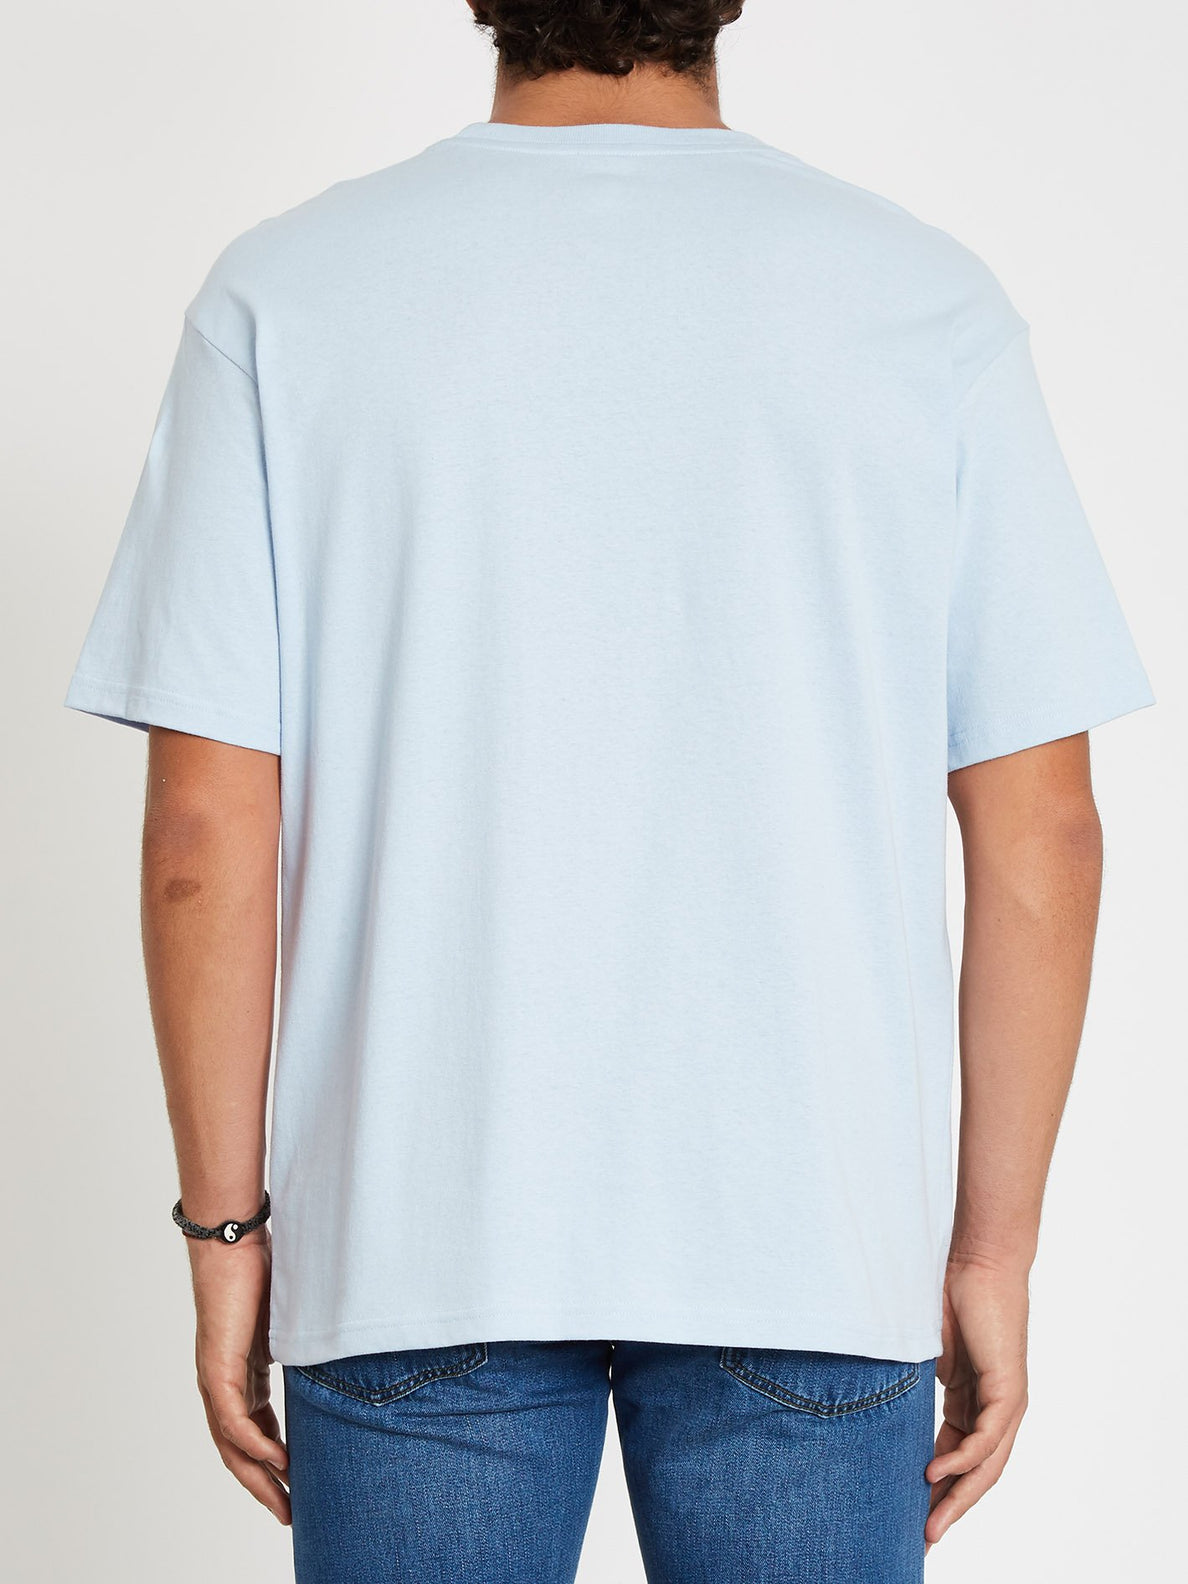 Sick 180 T-shirt - Aether Blue (A4312107_AEB) [B]